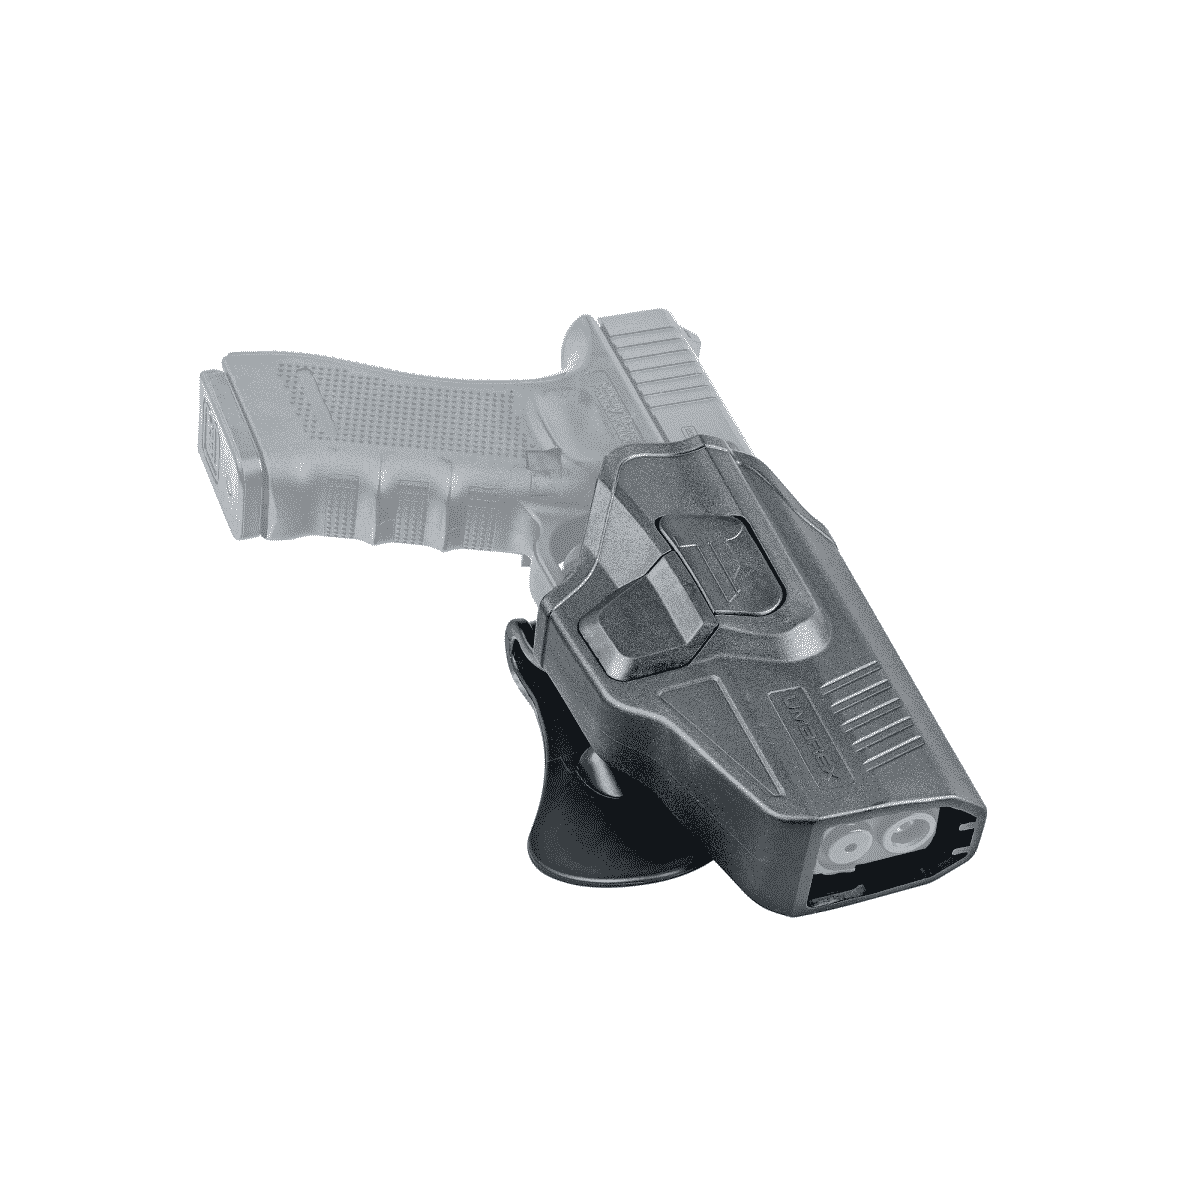 Toc Pistol Umarex Glock 360 3.1592